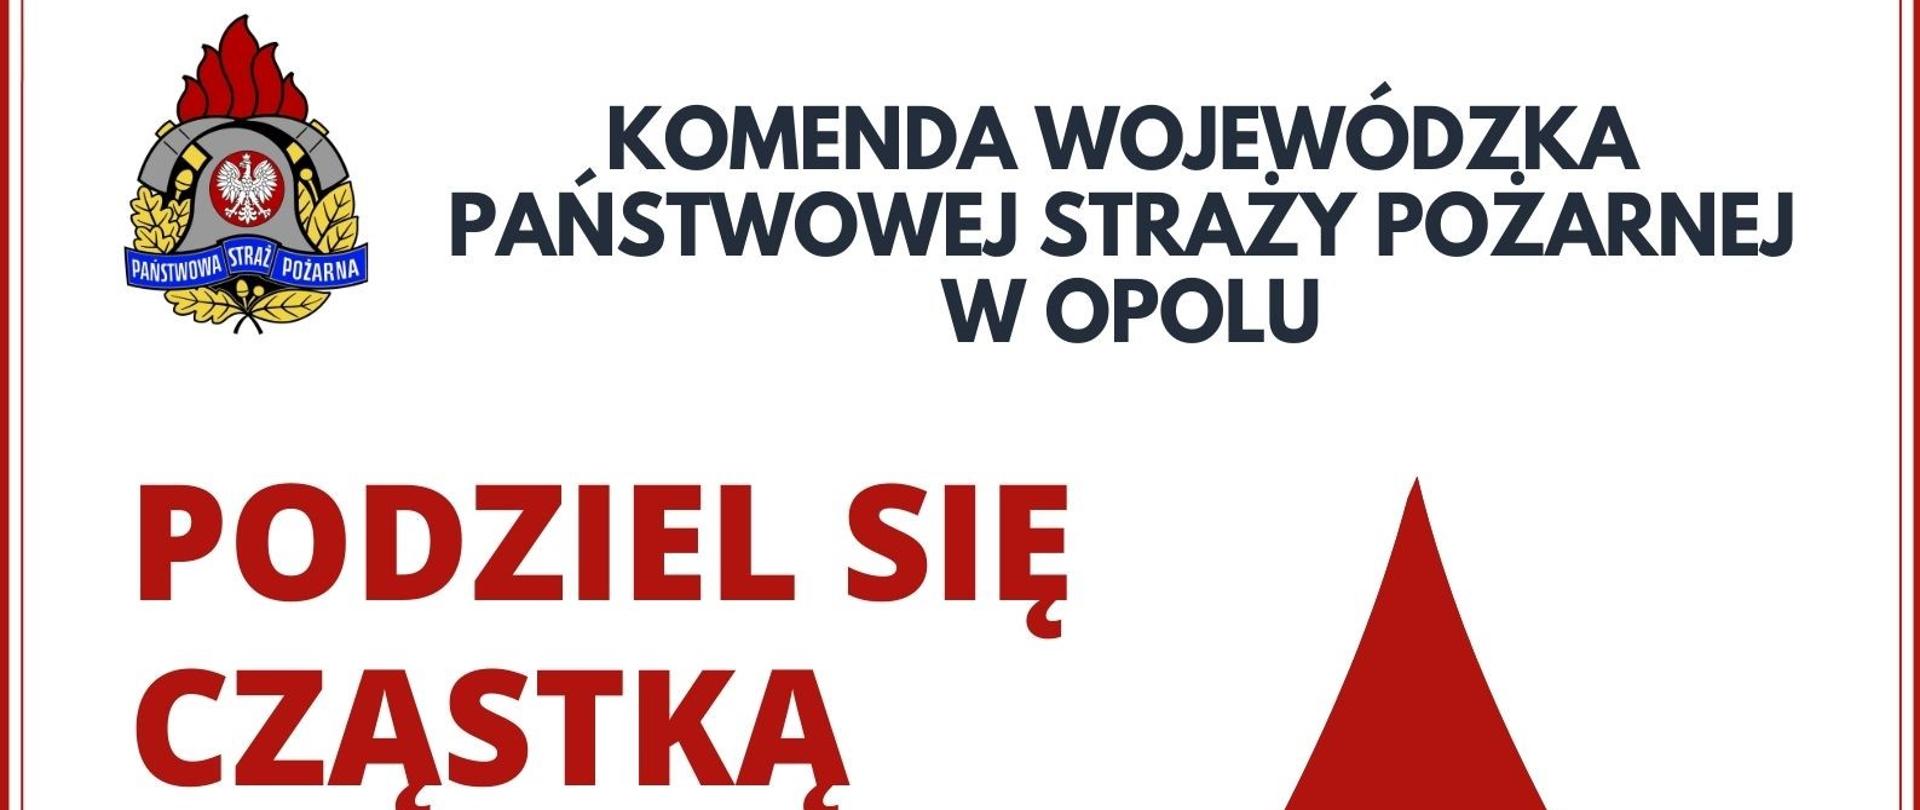 Plakat zachęcający do oddawania krwi. Akcja zorganizowana w dniu 17 lutego 2022 roku przez Komendę Wojewódzką PSP w Opolu.